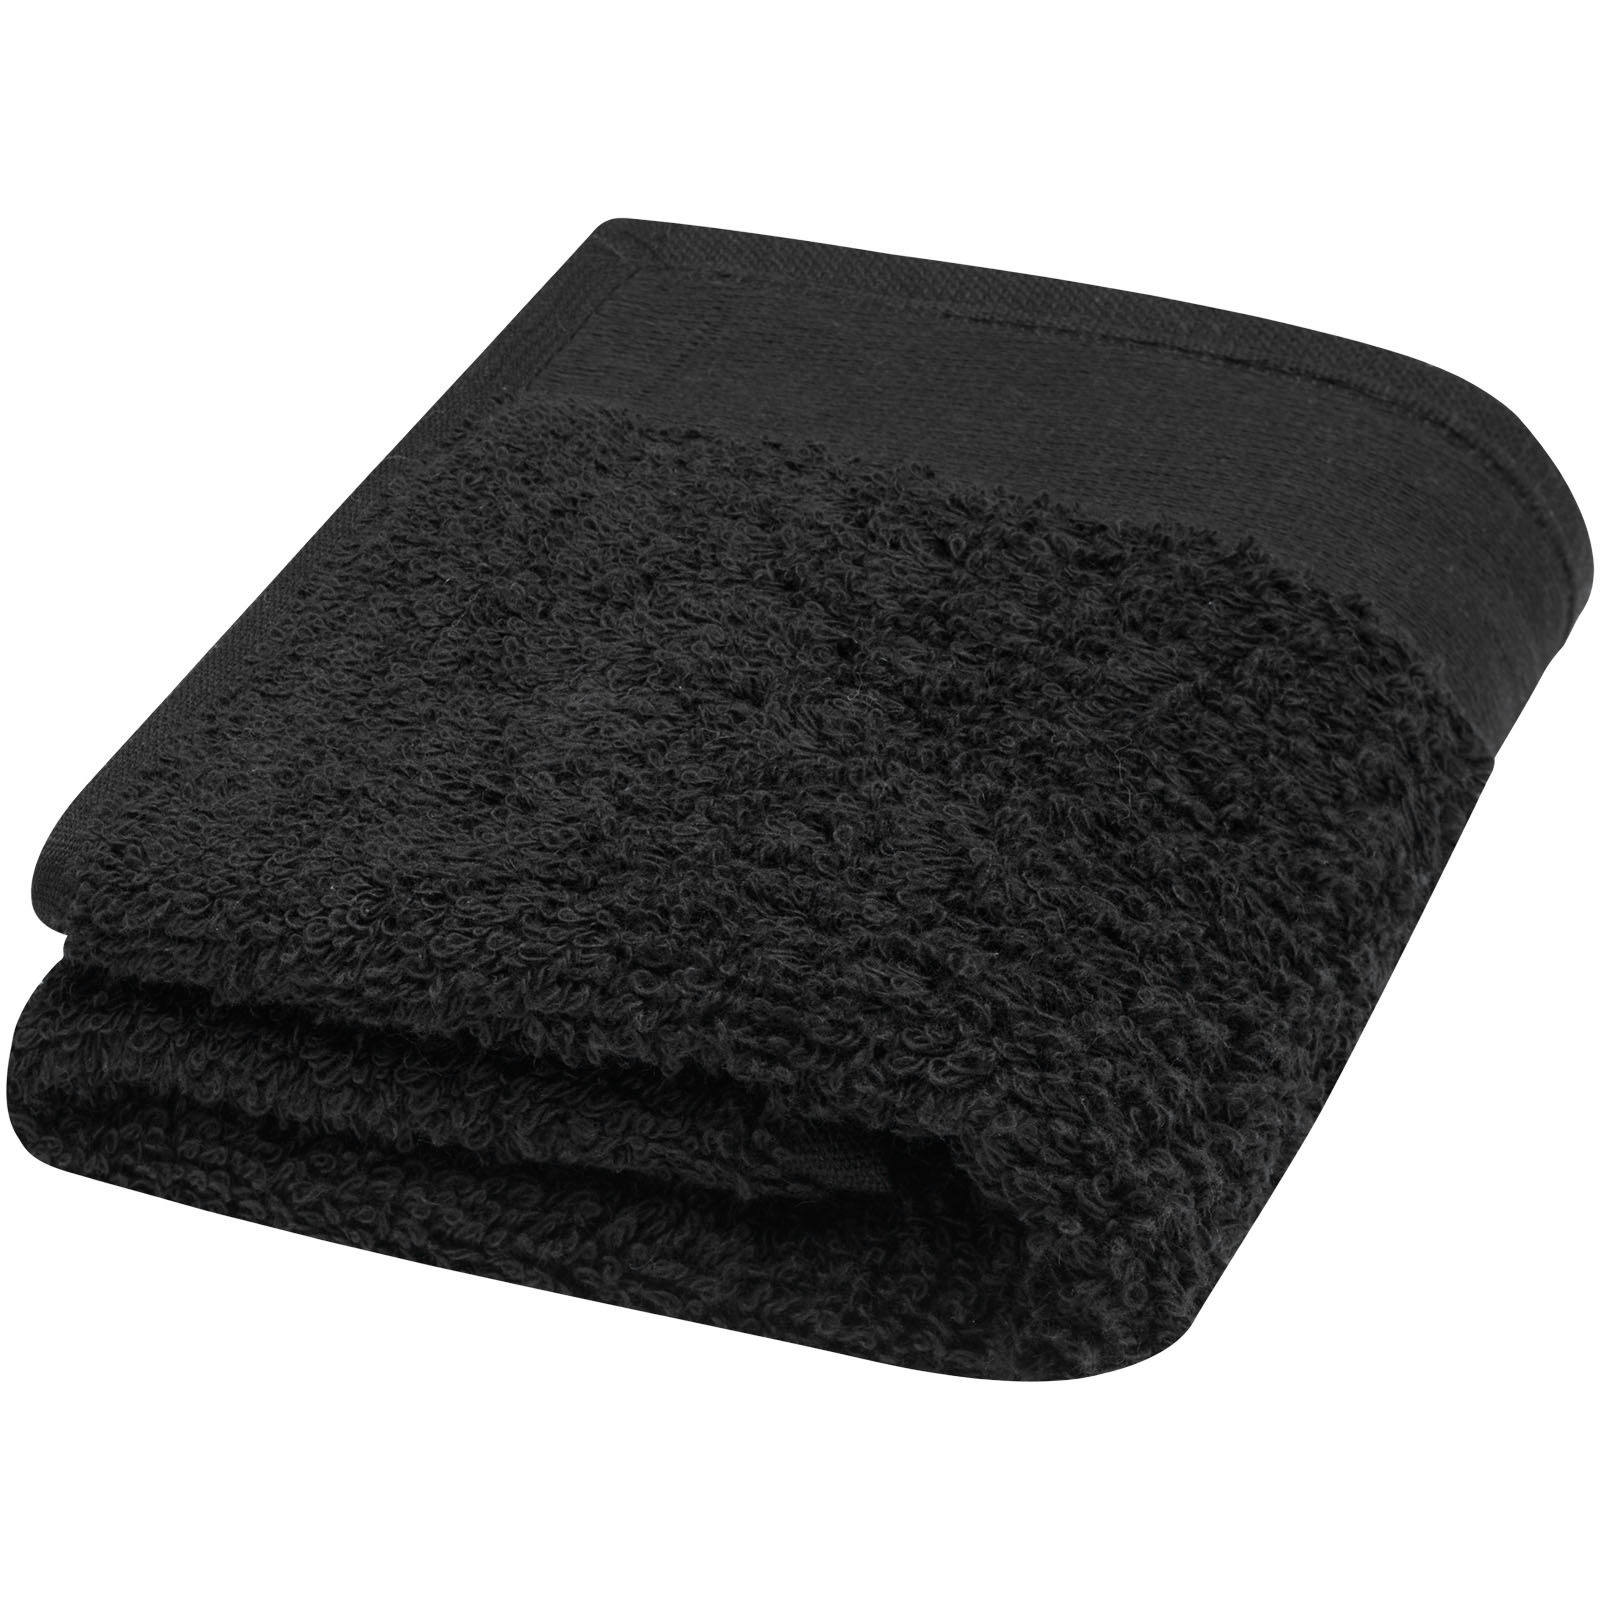 Chloe 550 g/m² håndklæde i bomuld 30x50 cm